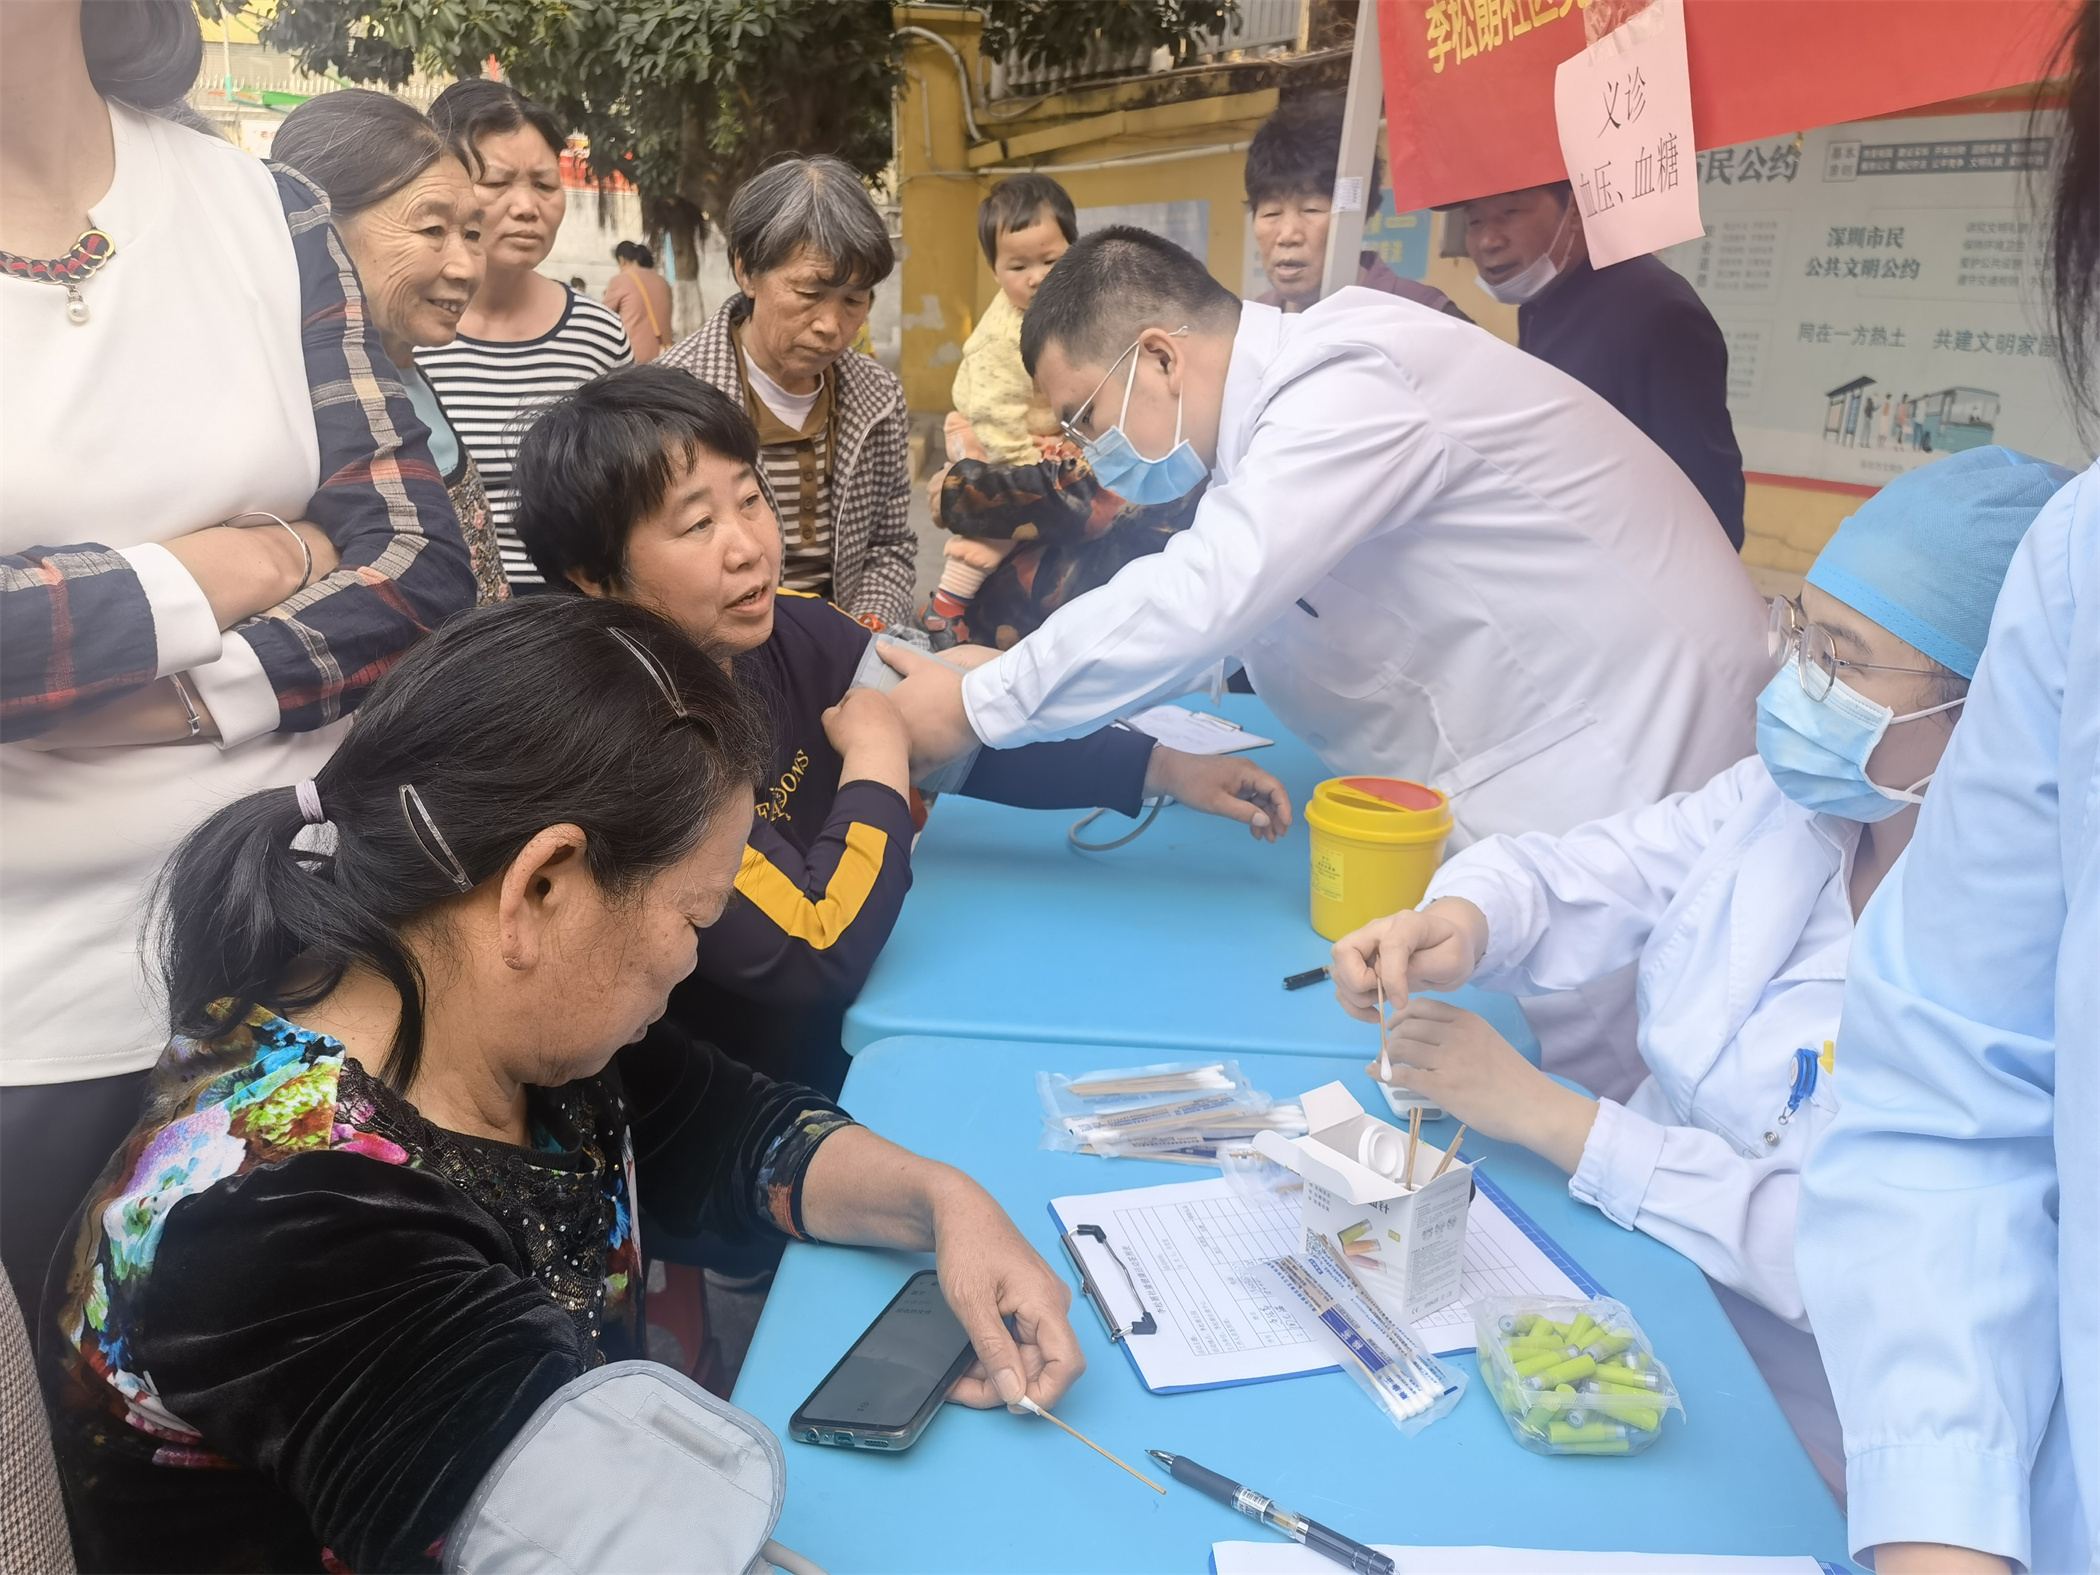 李松蓢社区推出“学雷锋”活动，为居民提供免费健康指导